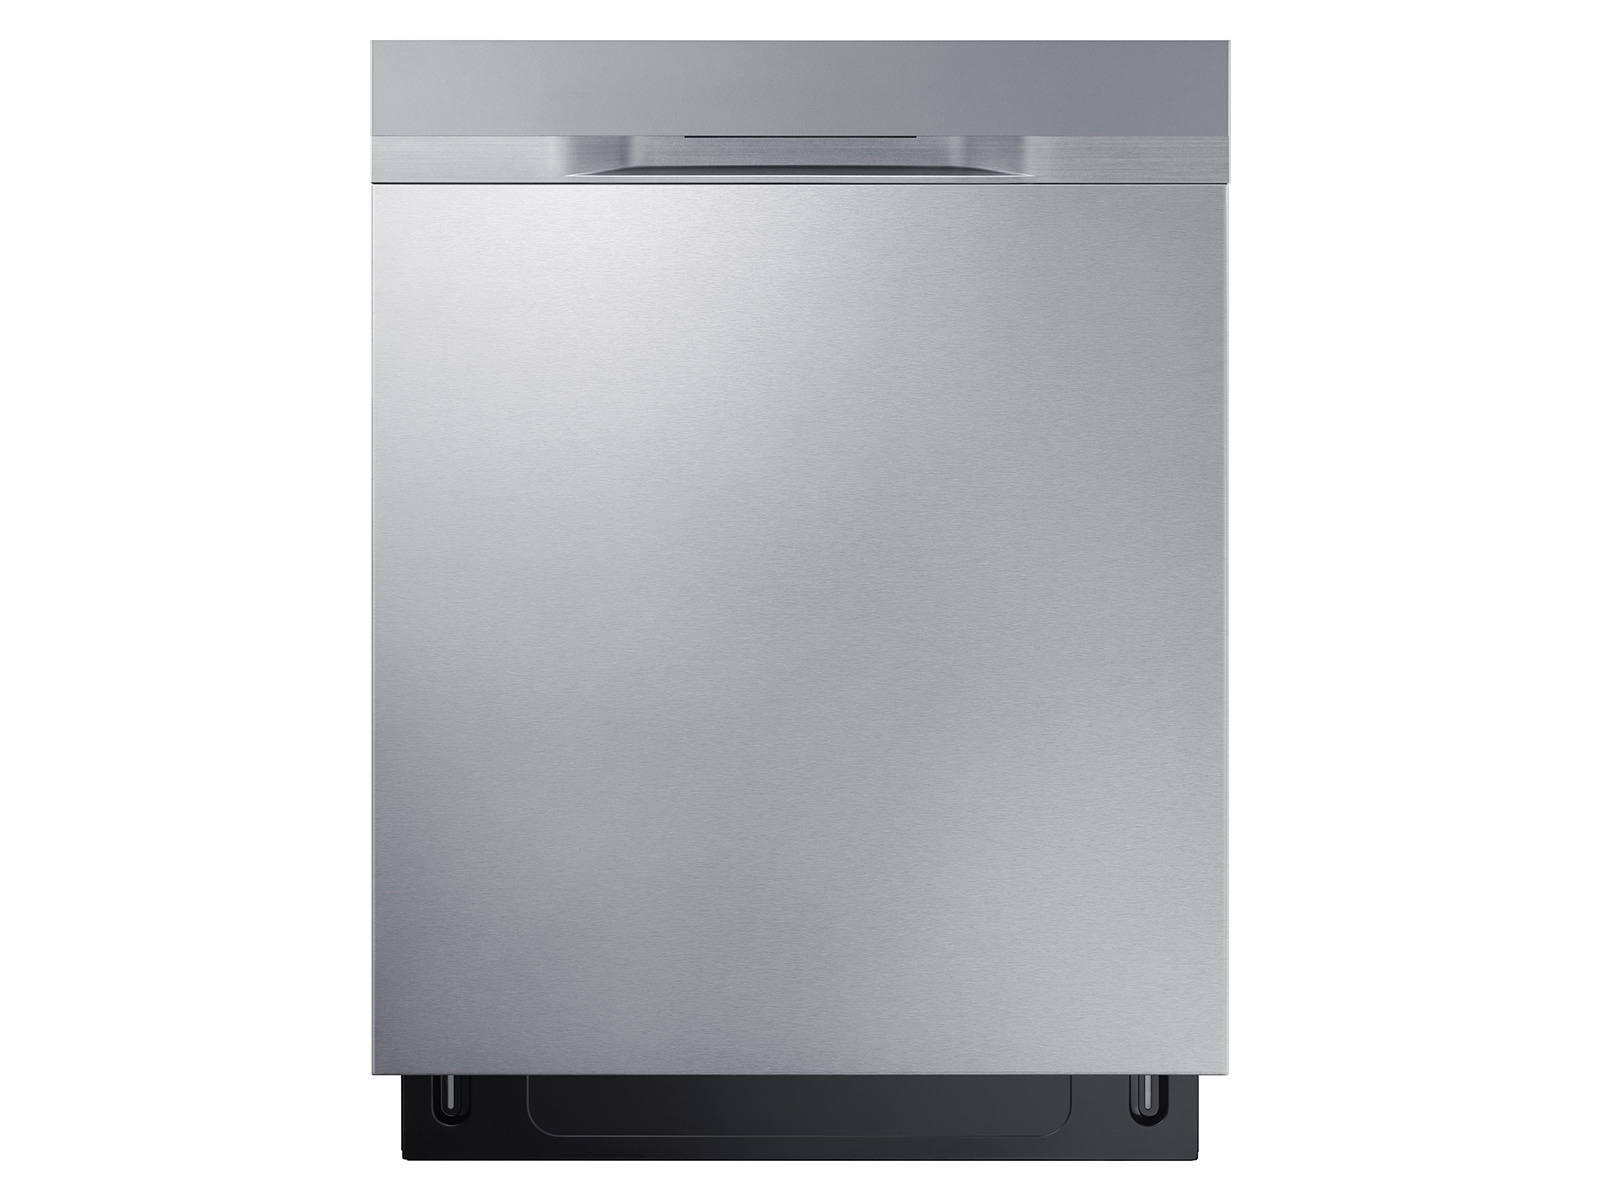 best stainless steel dishwasher 2016